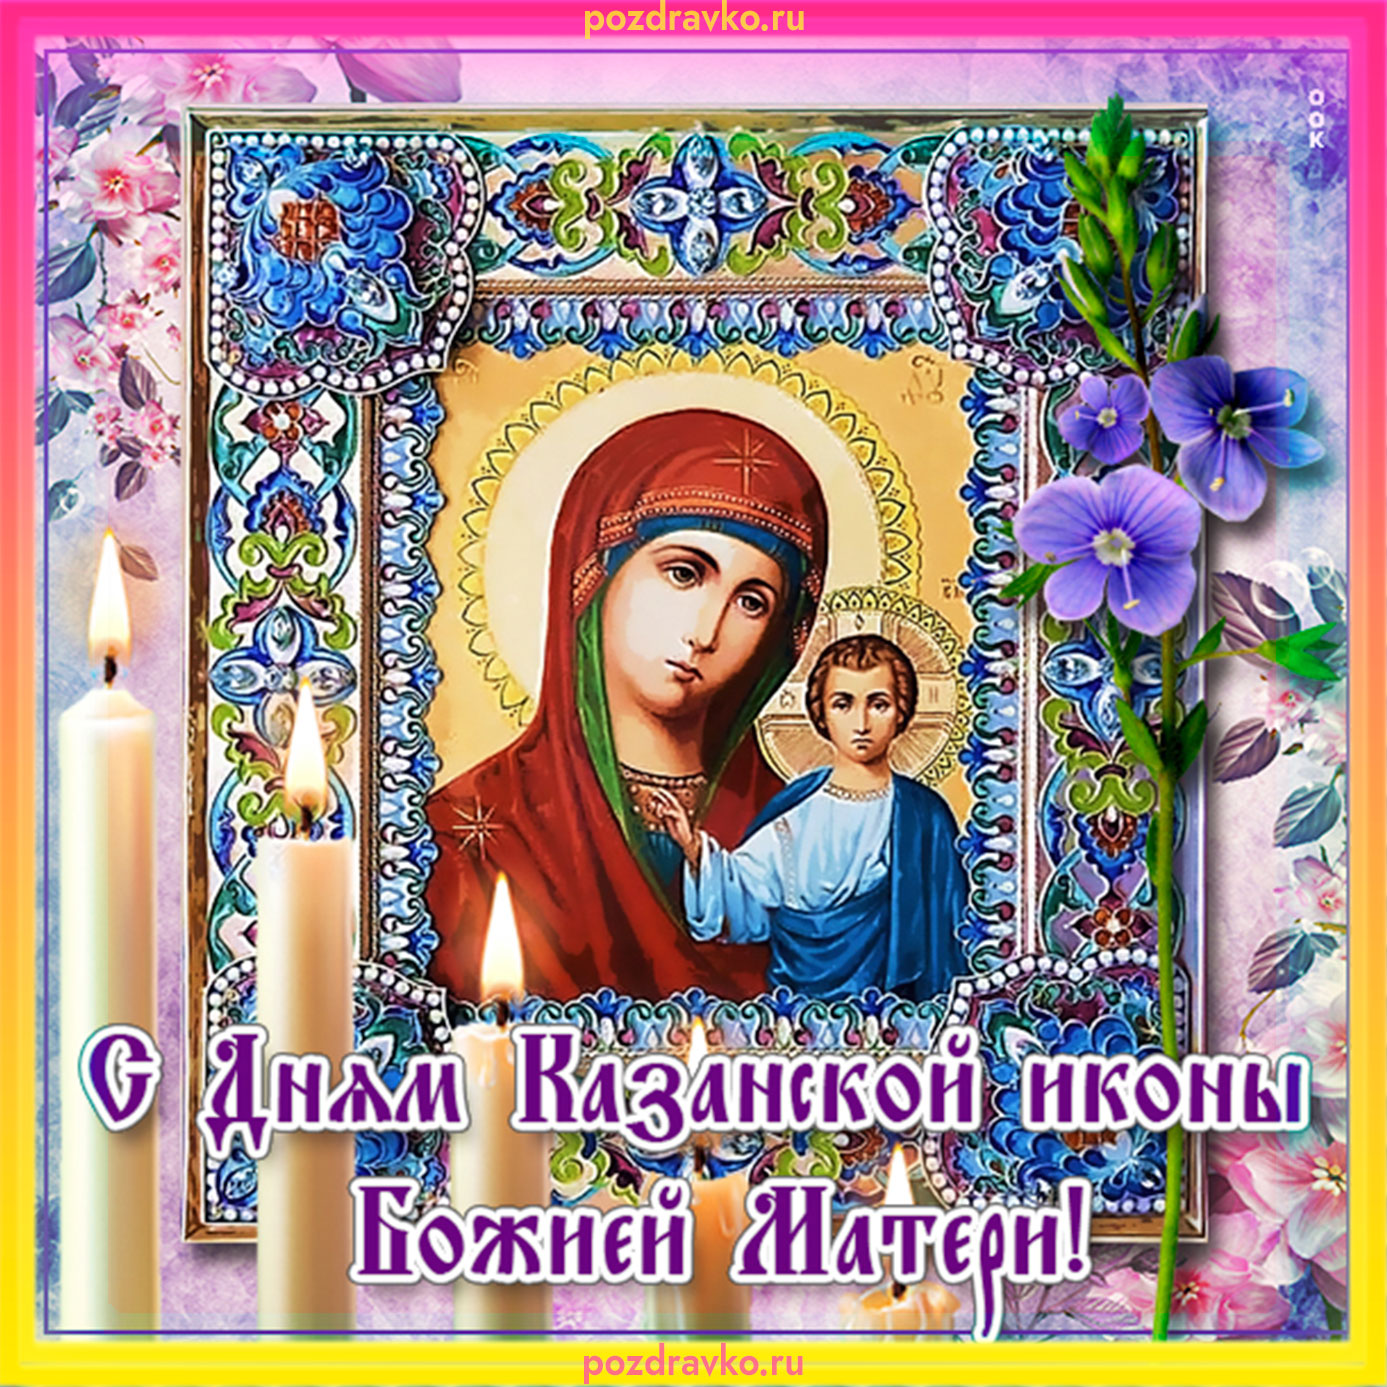 Красивые открытки с Днем Казанской иконы Божьей Матери (50 картинок)